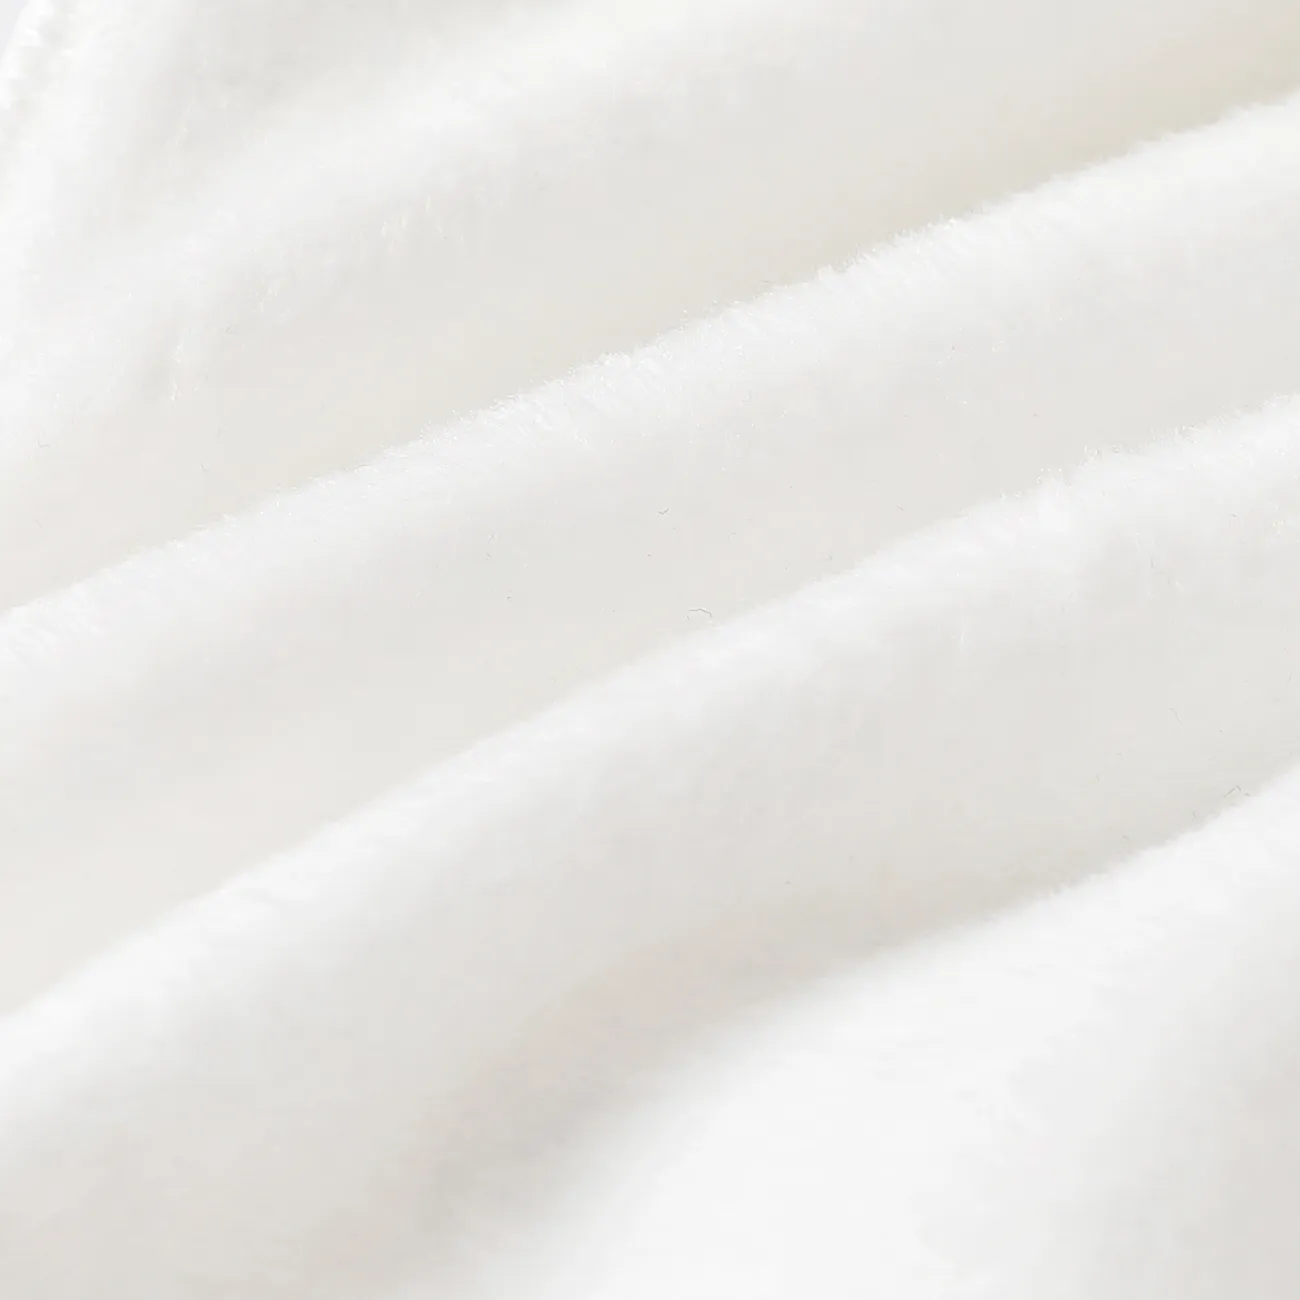 Baby Boy/Girl Solid Fleece-lining Casual Pants White big image 1